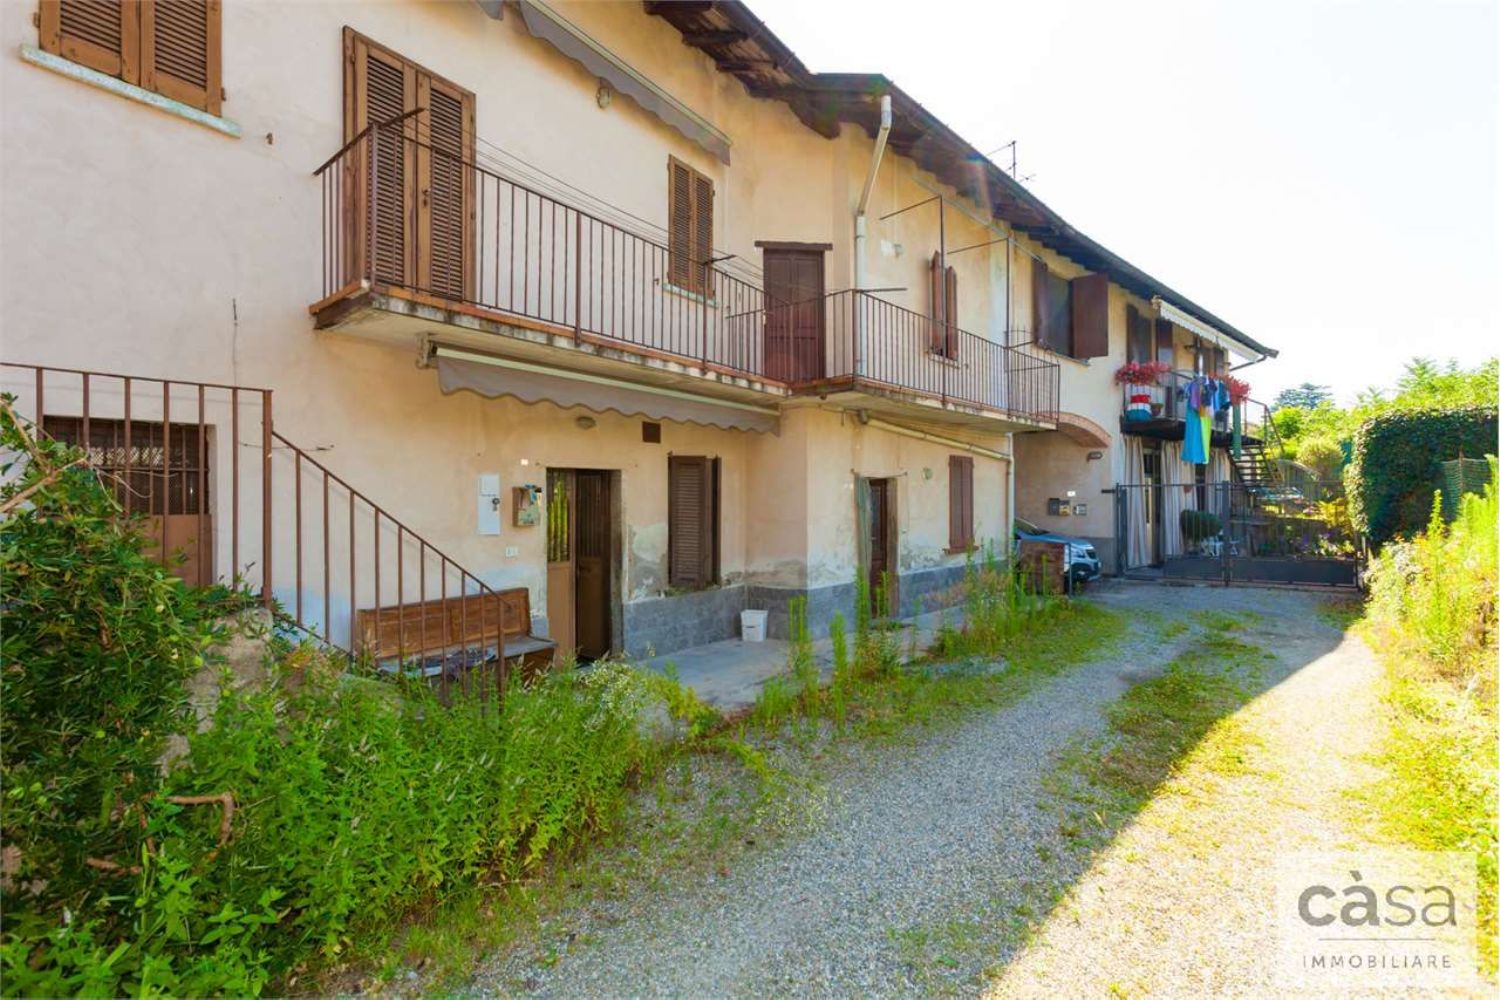 Villa Bifamiliare in vendita a Travedona-Monate, 7 locali, prezzo € 128.000 | PortaleAgenzieImmobiliari.it